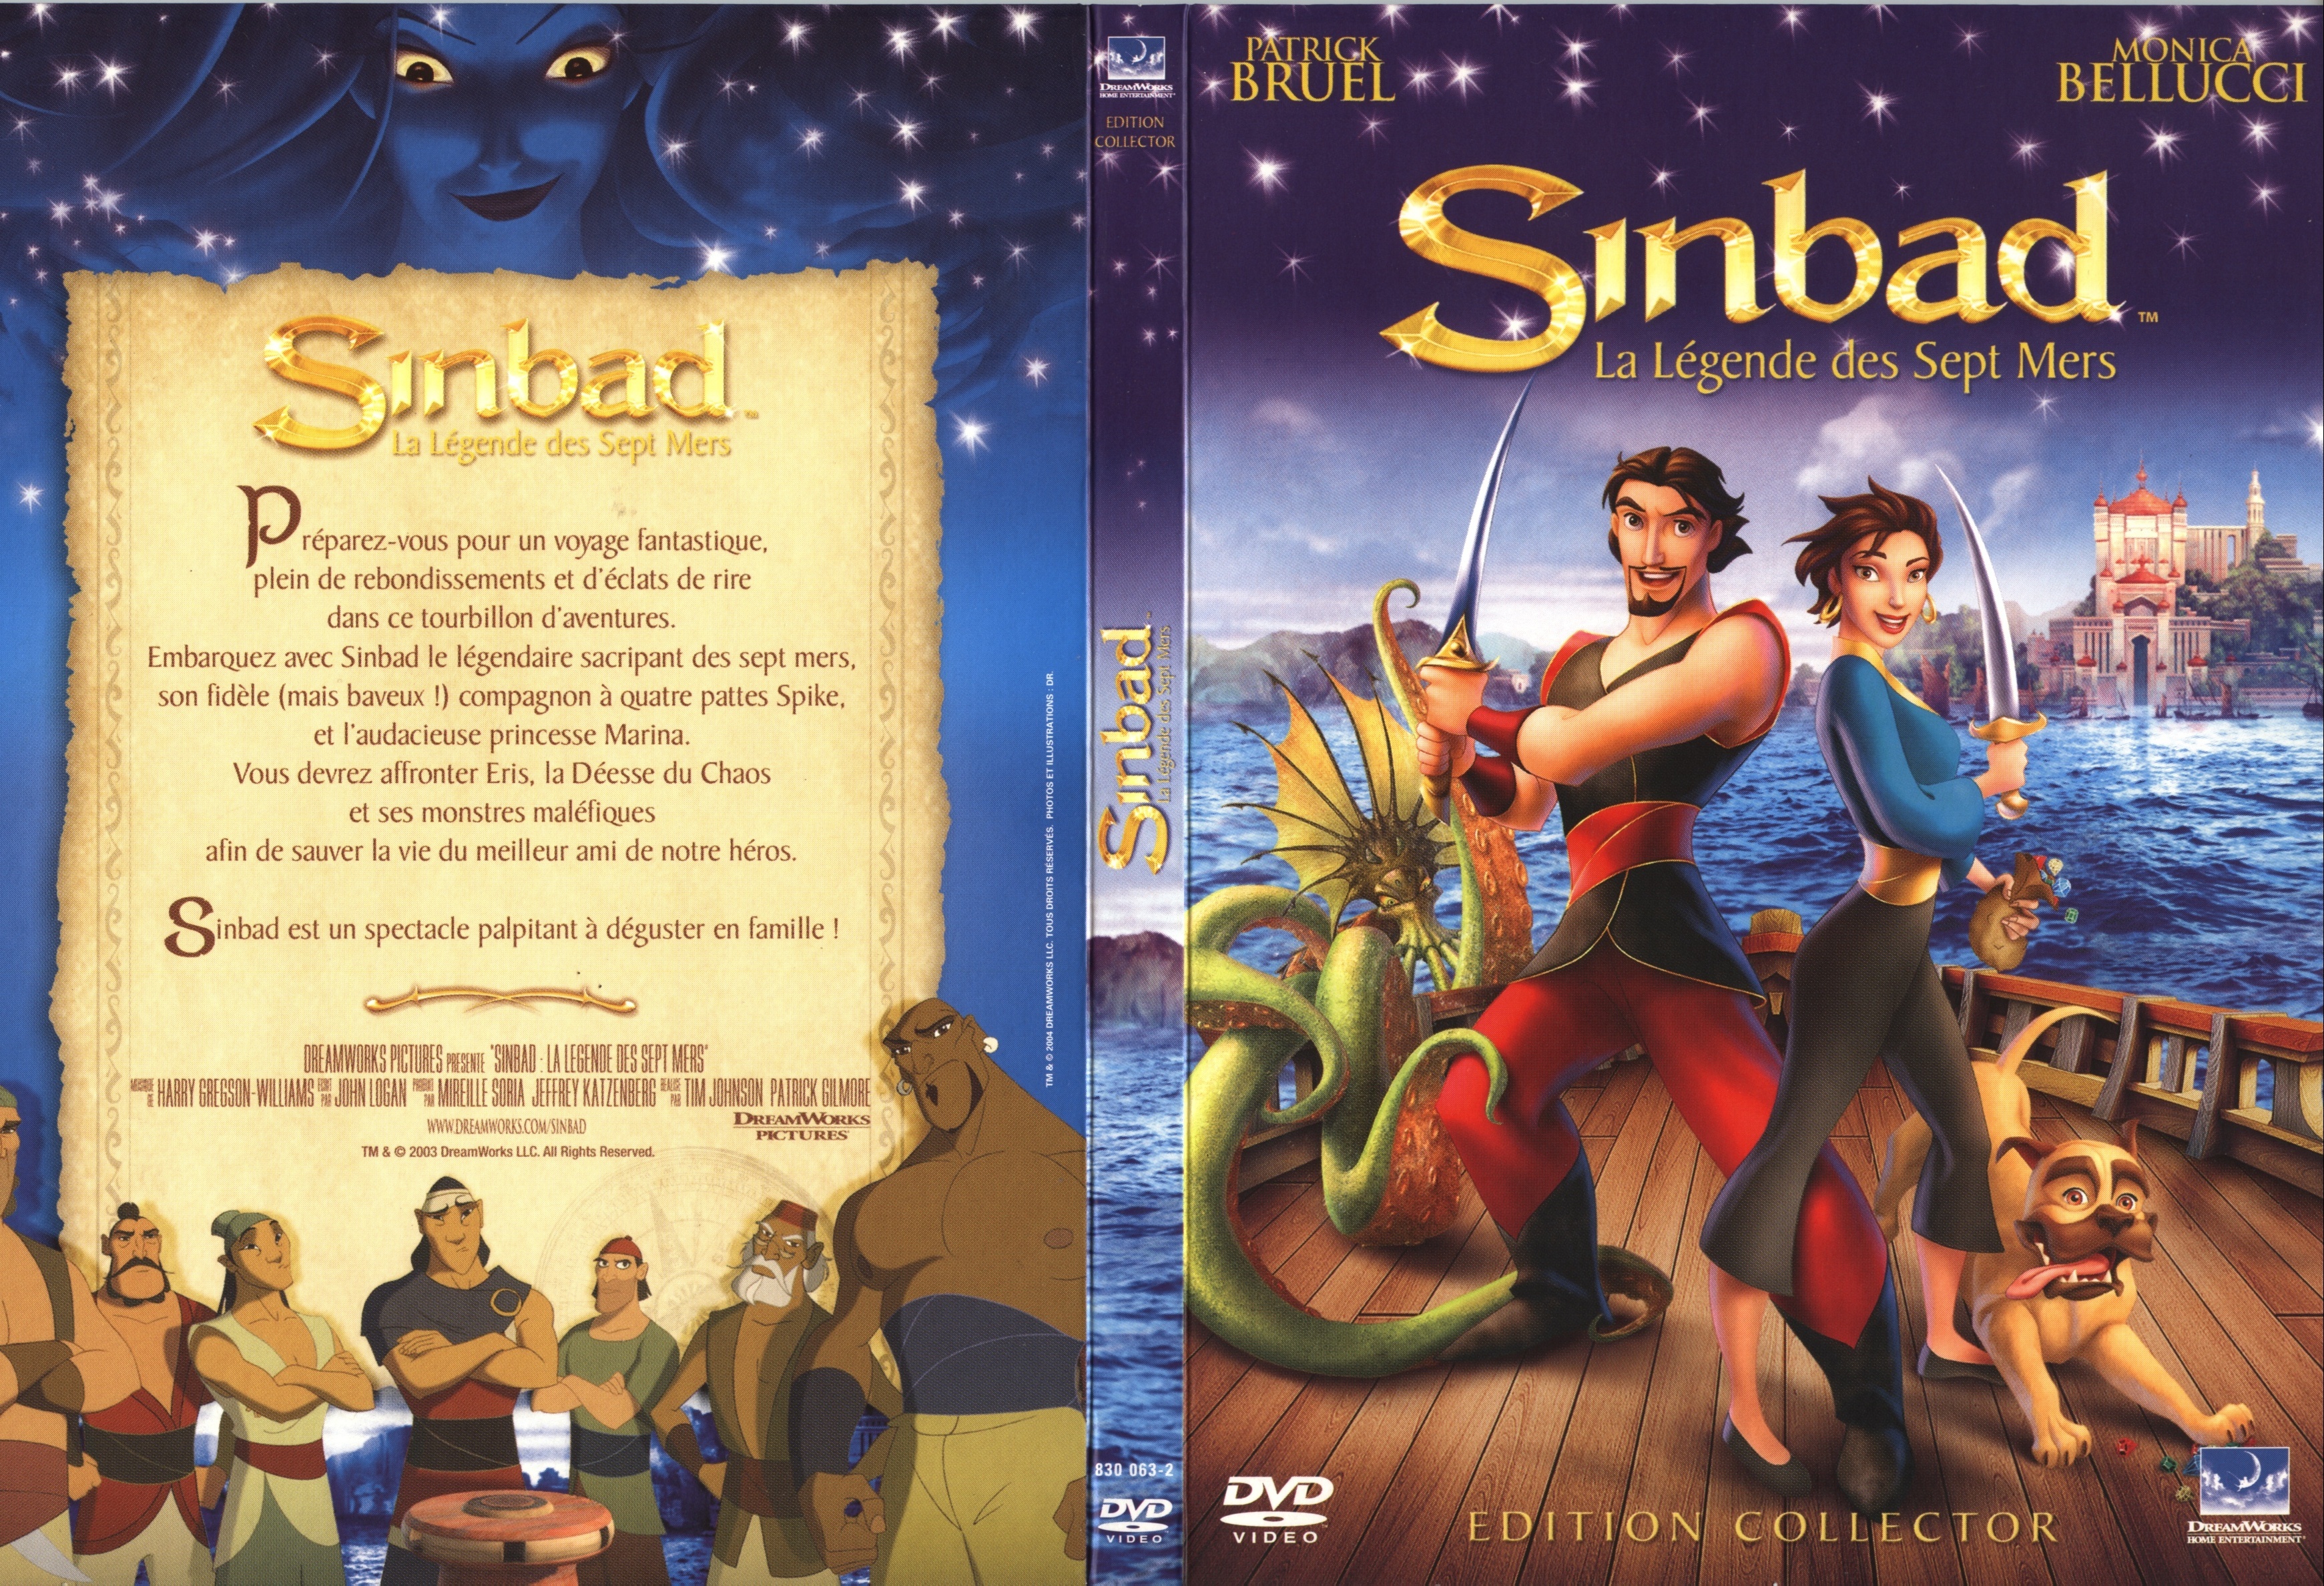 Jaquette DVD Sinbad la lgende des 7 mers v2